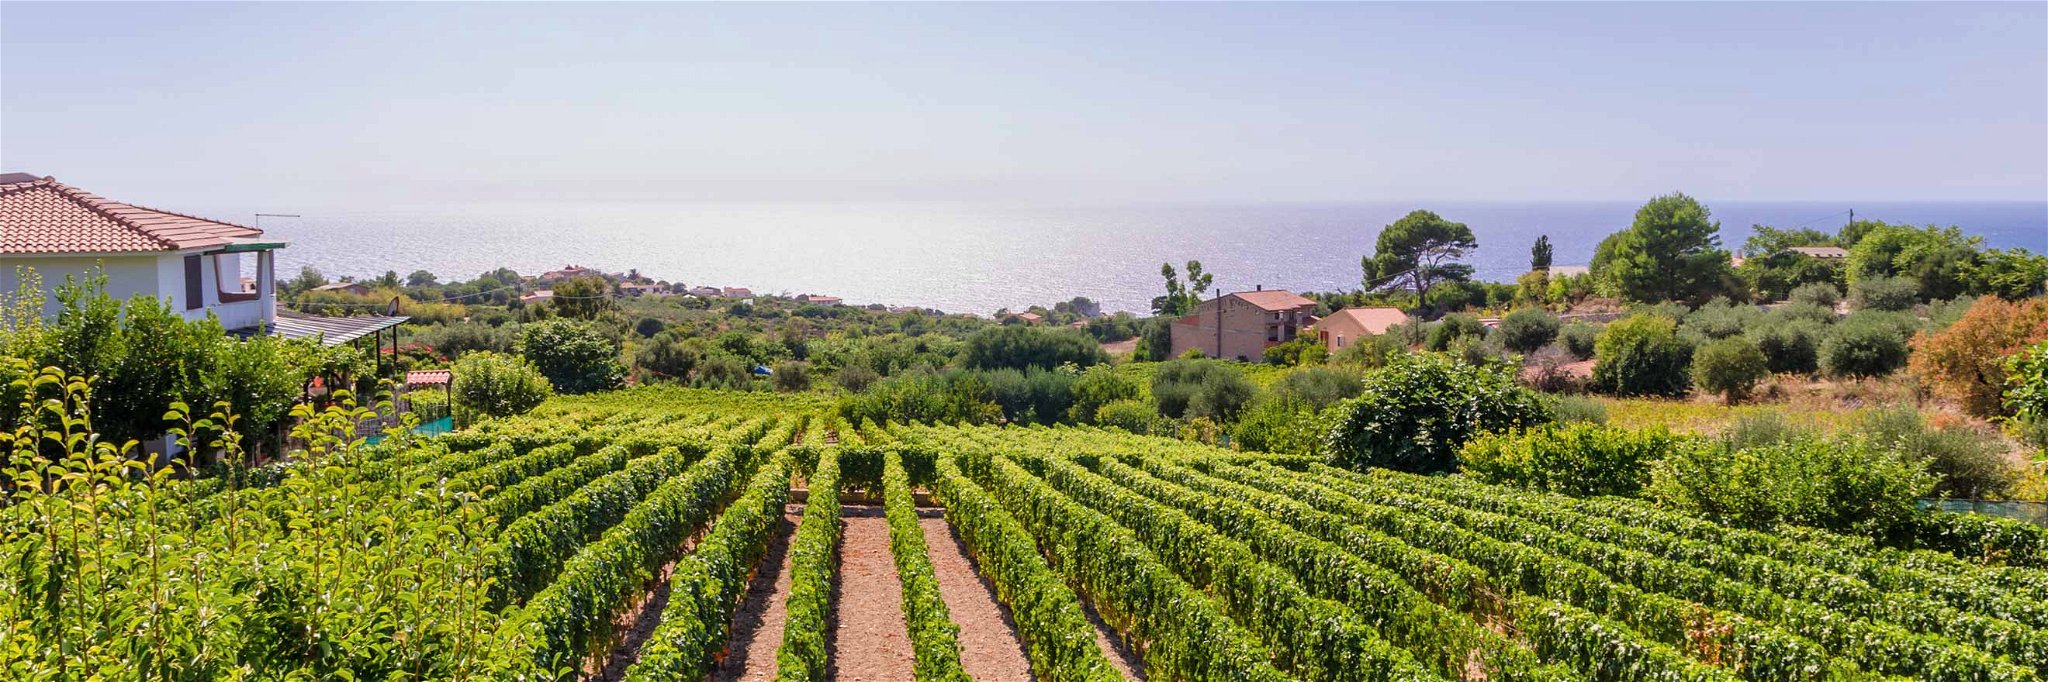 Faszinierender Blick aufs azurblaue Meer: Dieses Privileg genießen in Sardinien viele Weingärten.&nbsp;